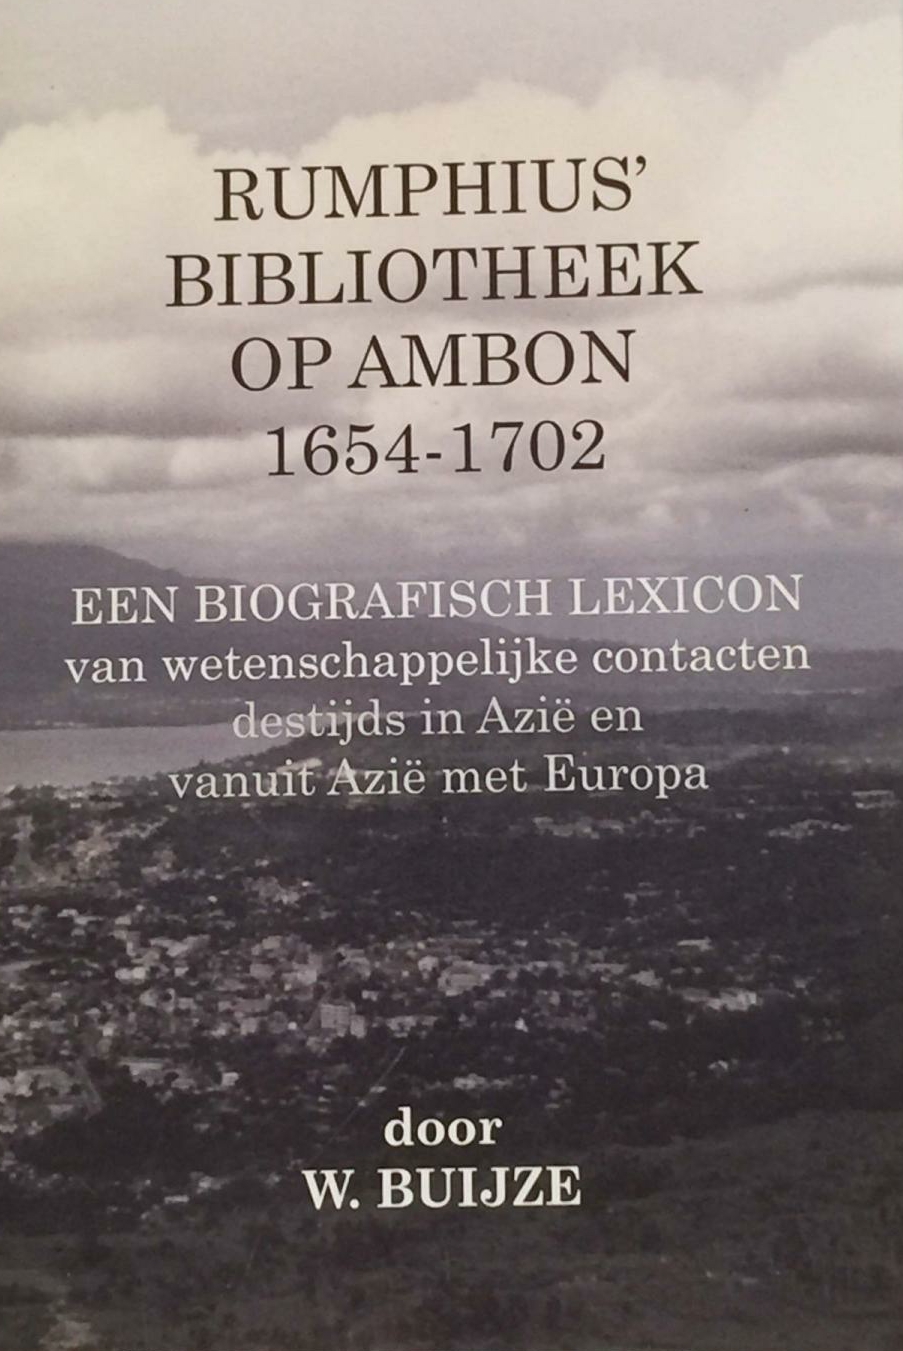 BUIJZE, W. - Rumphius' bibliotheek op Ambon 1654-1702 en een biografisch lexicon van wetenschappelijke contacten destijds in Azi en vanuit Azi met Europa.